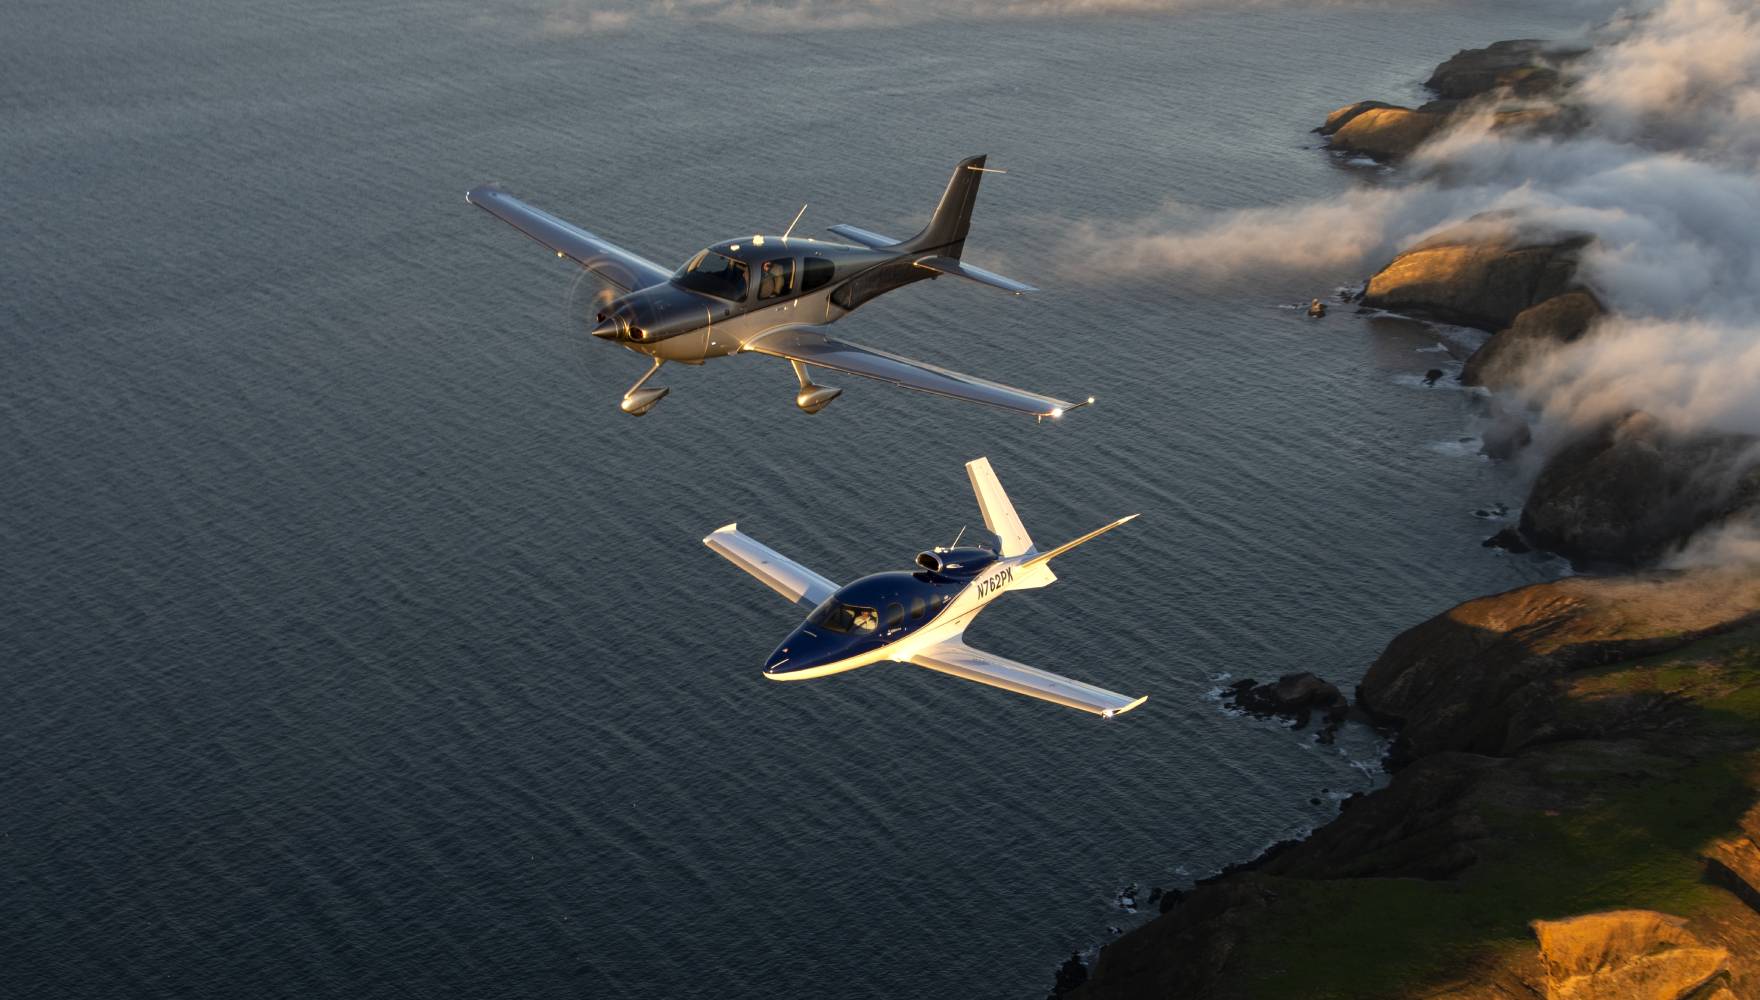 Cirrus Aircraft Showcases the New G2+ Vision Jet® at NBAA-BACE 2021